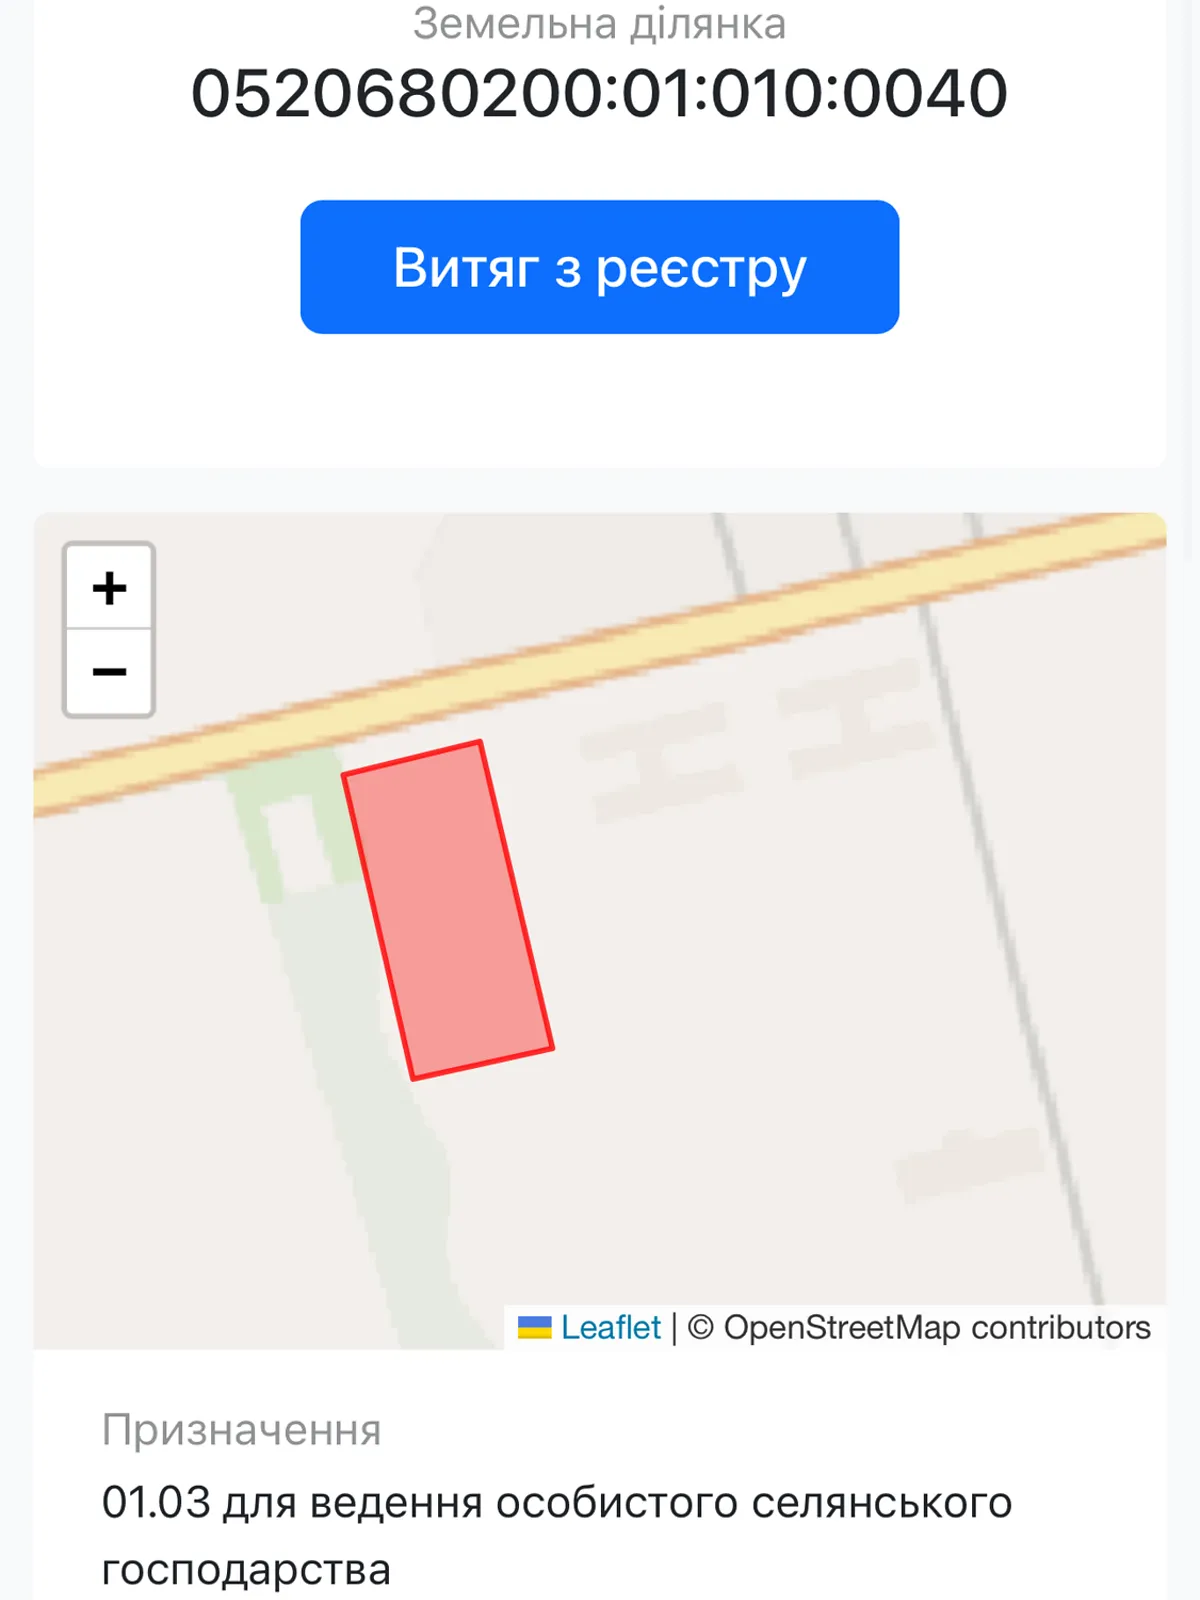 Продается земельный участок 1.4 соток в Винницкой области, цена: 560000 $ - фото 1